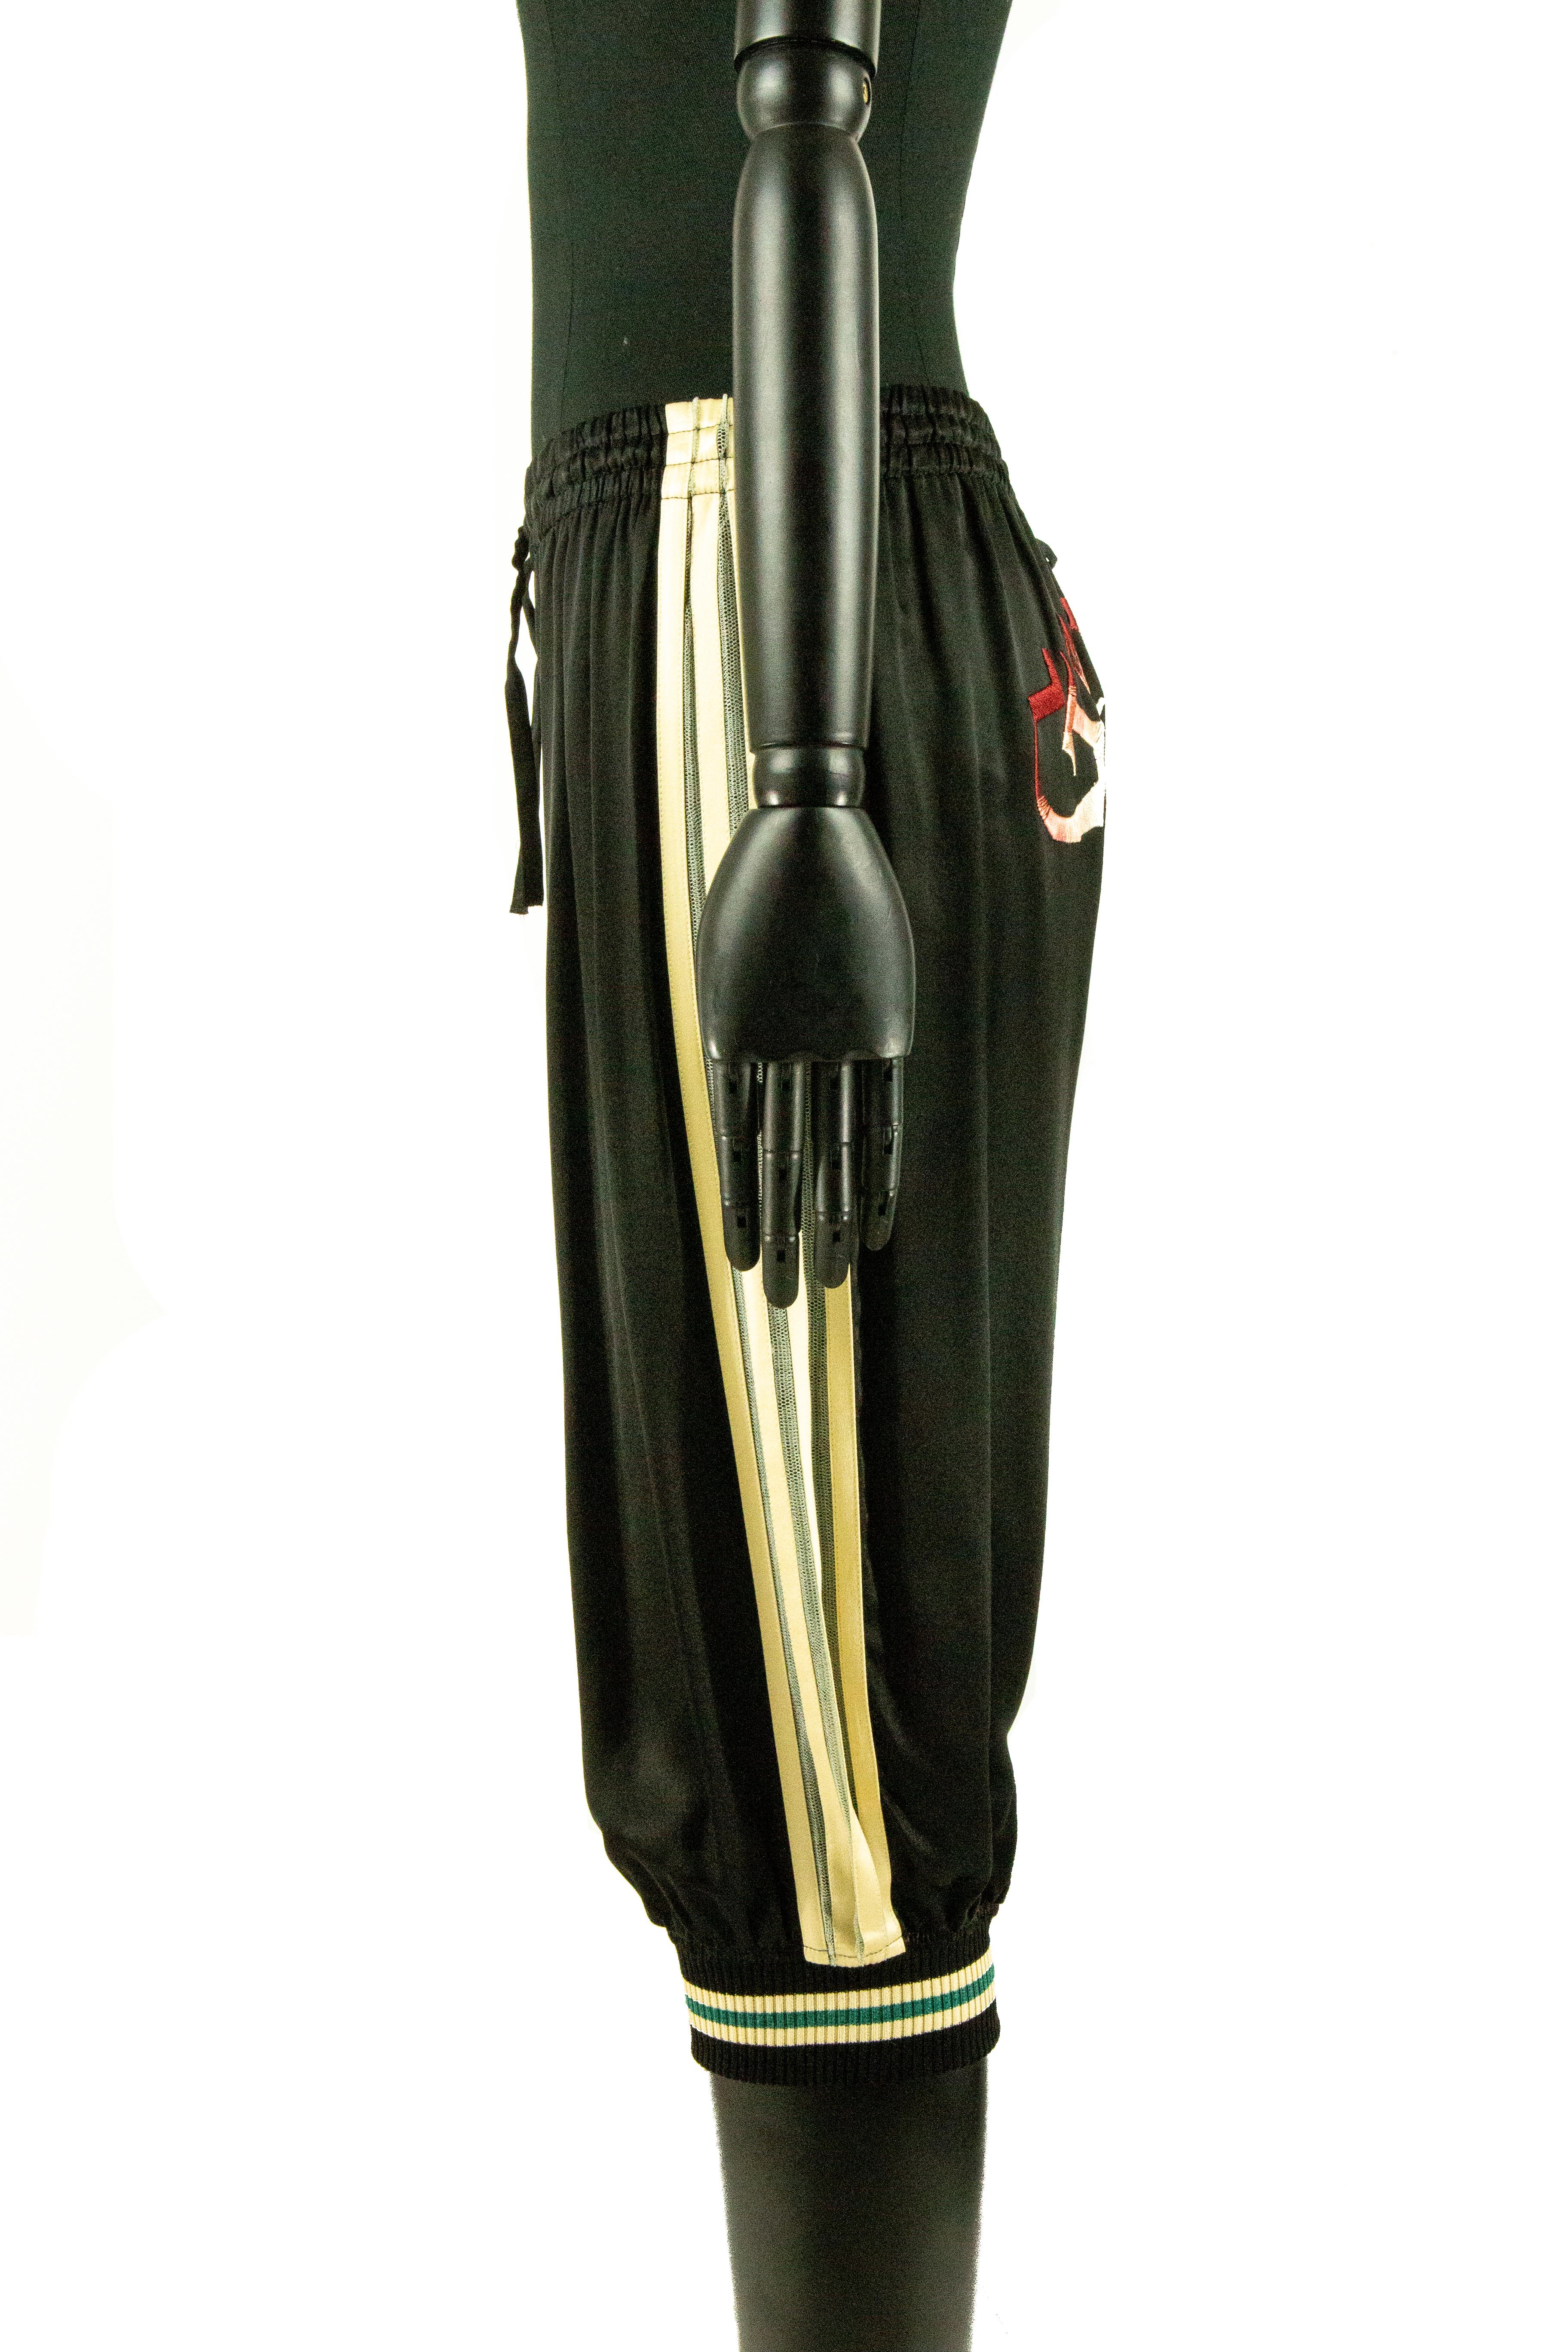 Jean Paul Gaultier Shorts aus schwarzem Satin mit Streifen auf beiden Seiten, Mitte der 1990er Jahre. Die Shorts sind mit Rippbündchen versehen und mit einem elastischen Bund und Kordelzug verstellbar. Auf der Rückseite des Kleidungsstücks ist der